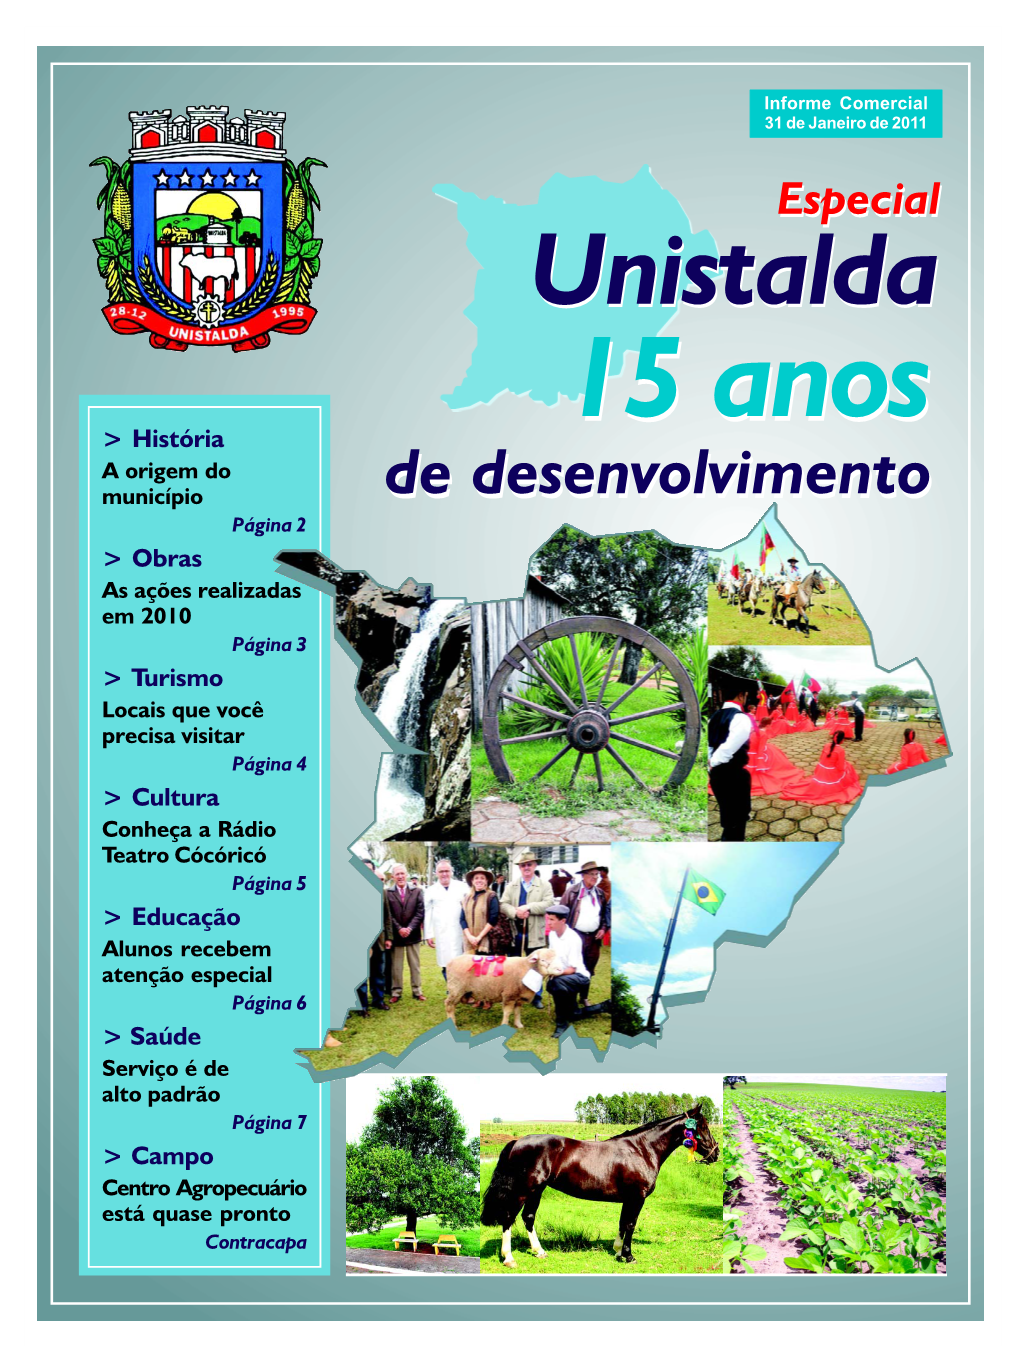 Especial Unistaldaunistalda Informe Comercial 31 De Janeiro De 2011